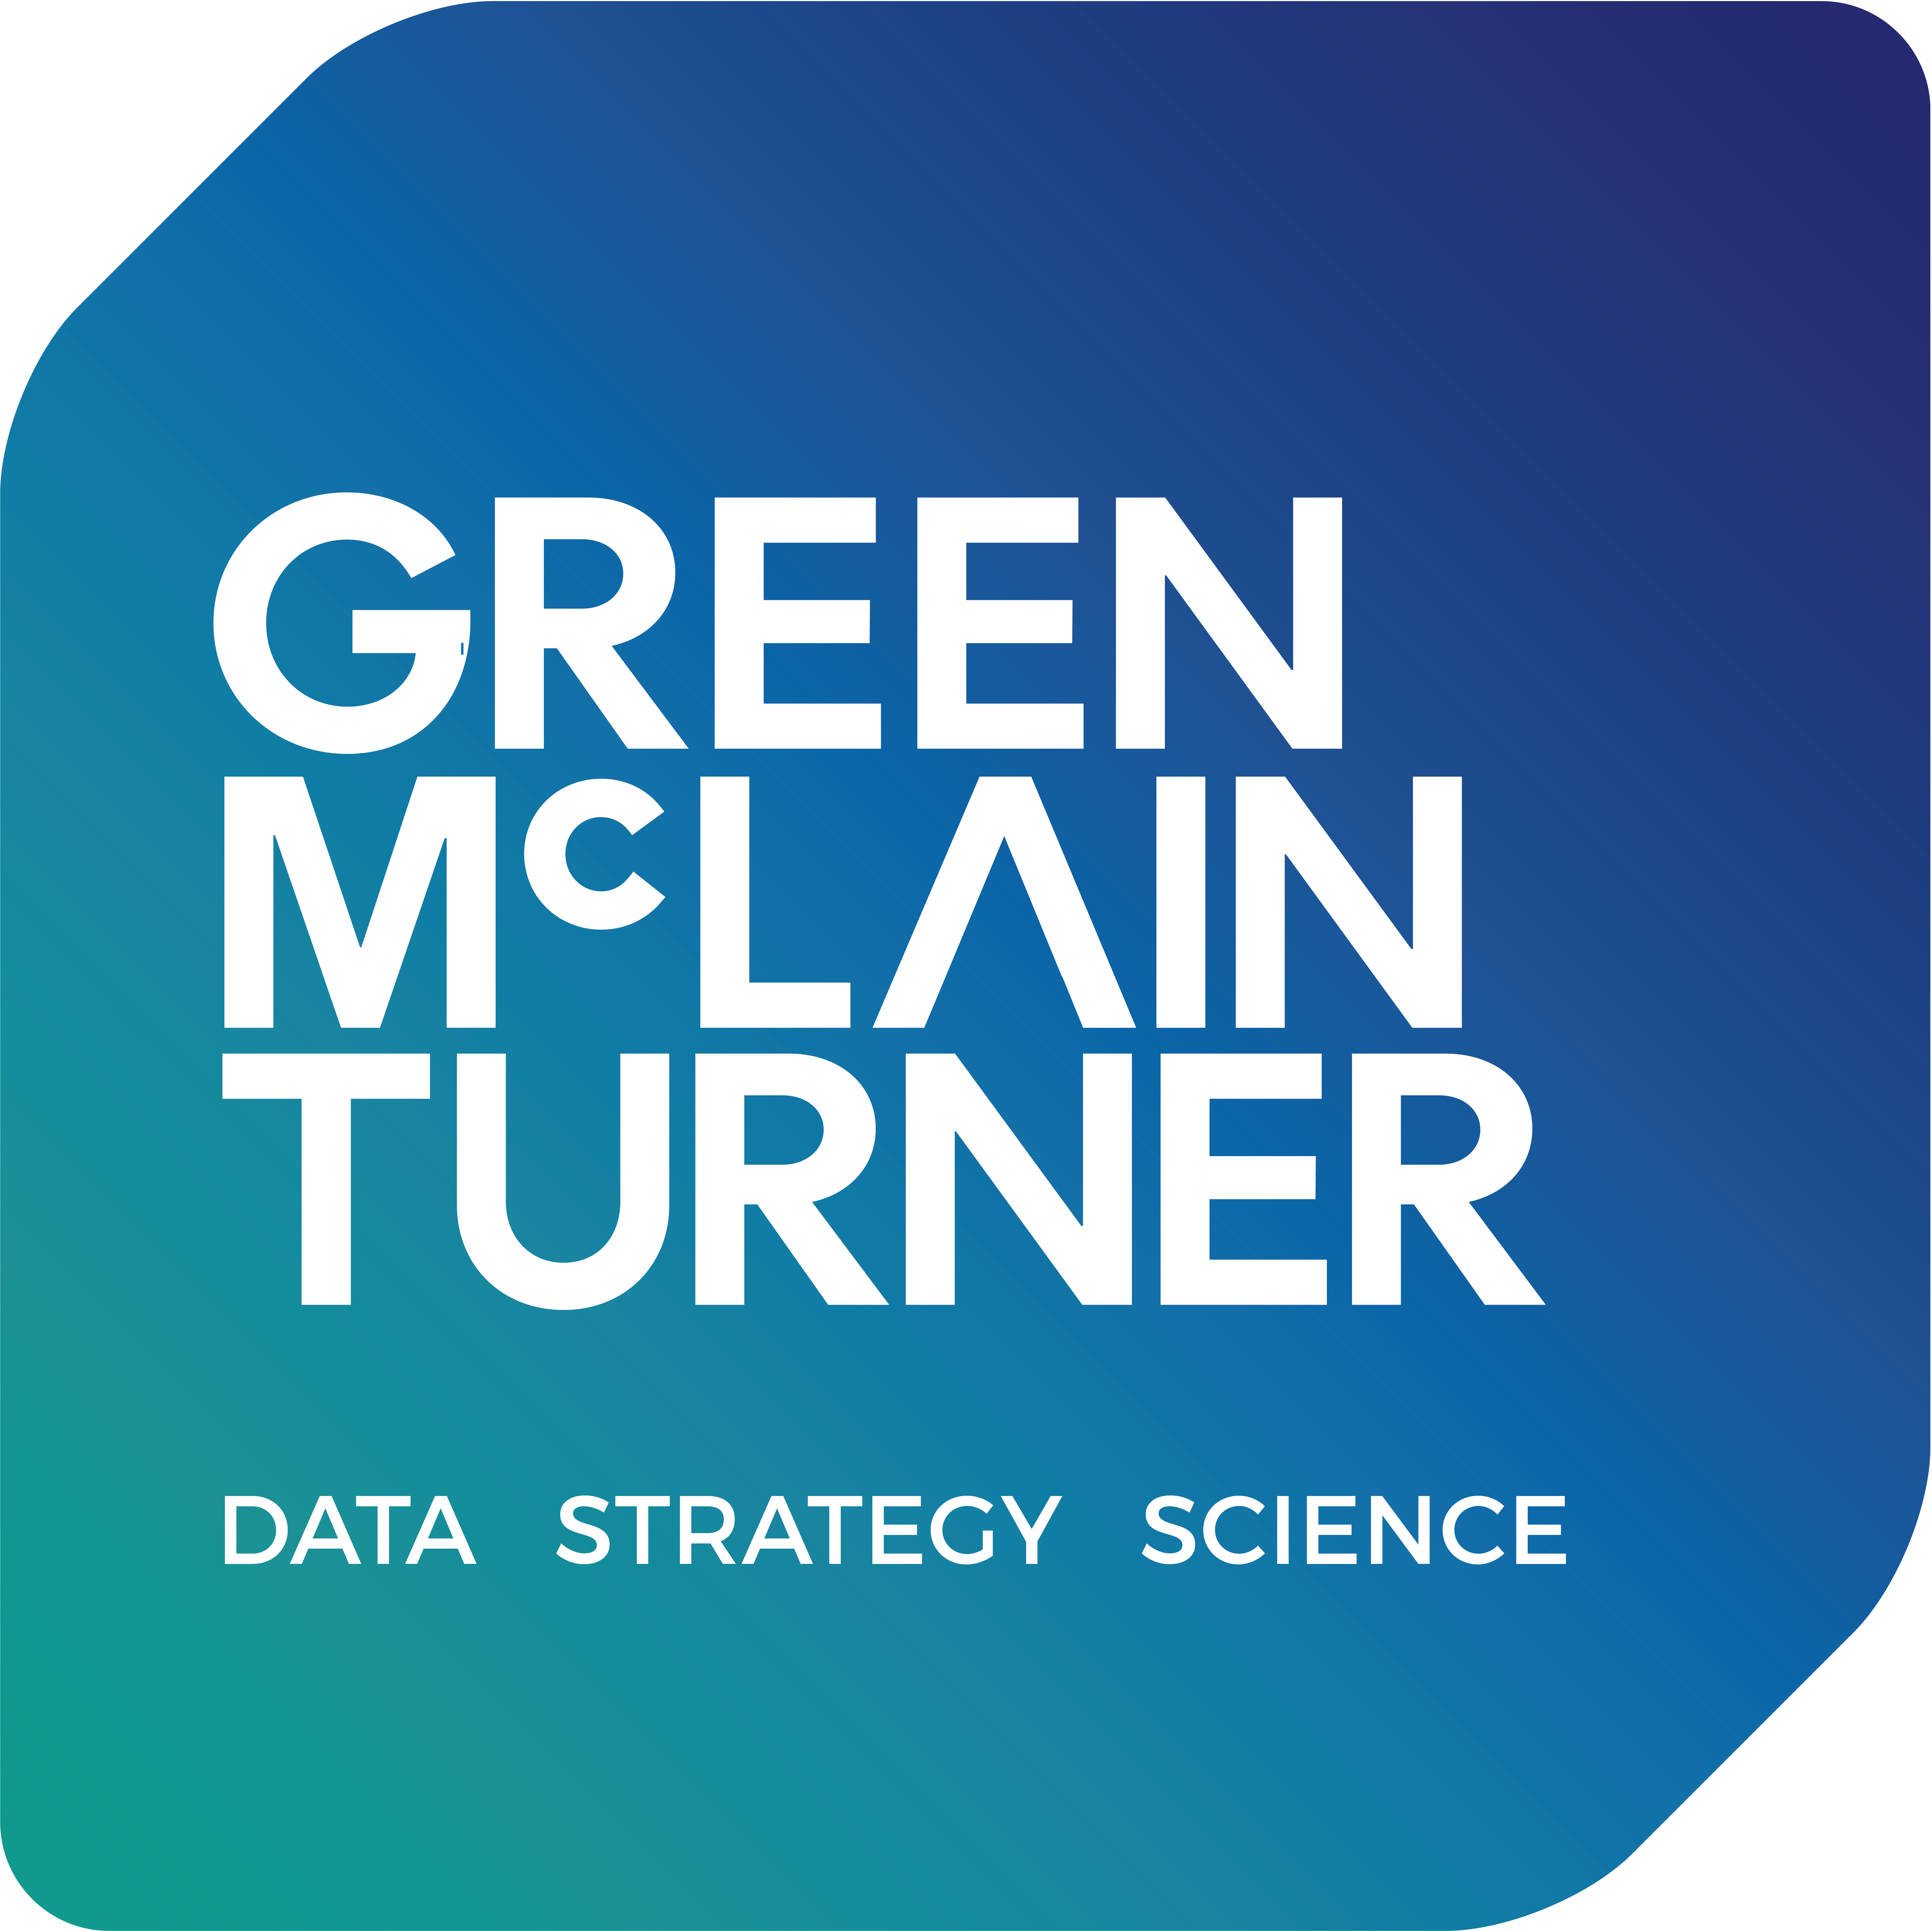 Green McLain Turner